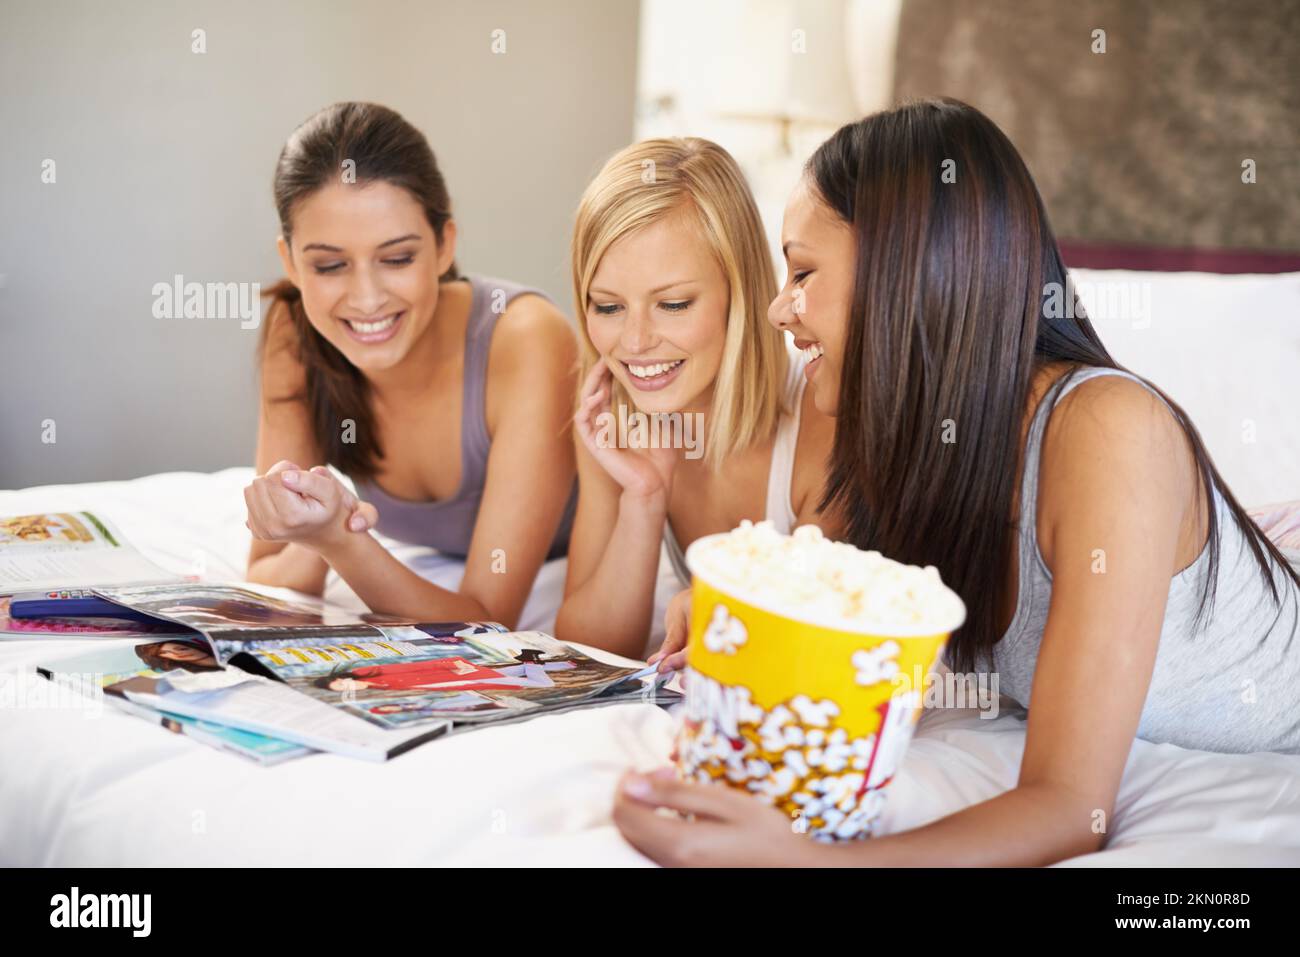 Sie bekommen ihre Dosis Unterhaltungsnachrichten. Drei attraktive junge Frauen, die eine Ladies-Nacht feiern. Stockfoto